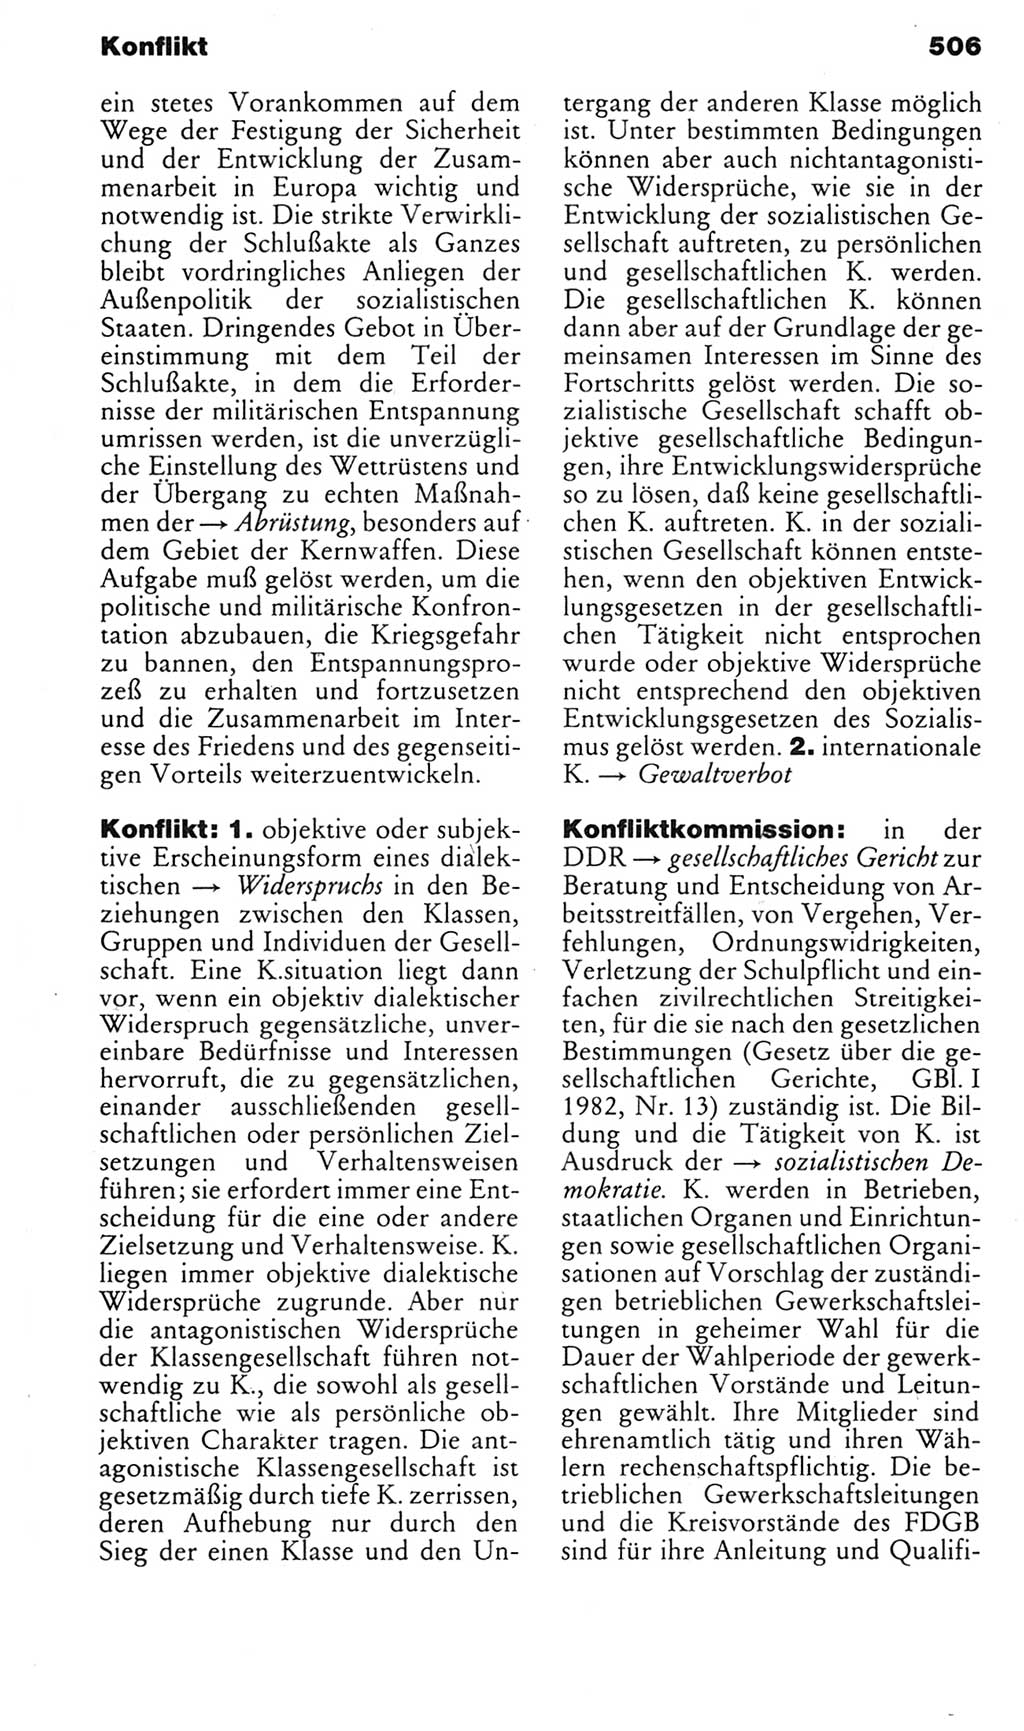 Kleines politisches Wörterbuch [Deutsche Demokratische Republik (DDR)] 1985, Seite 506 (Kl. pol. Wb. DDR 1985, S. 506)